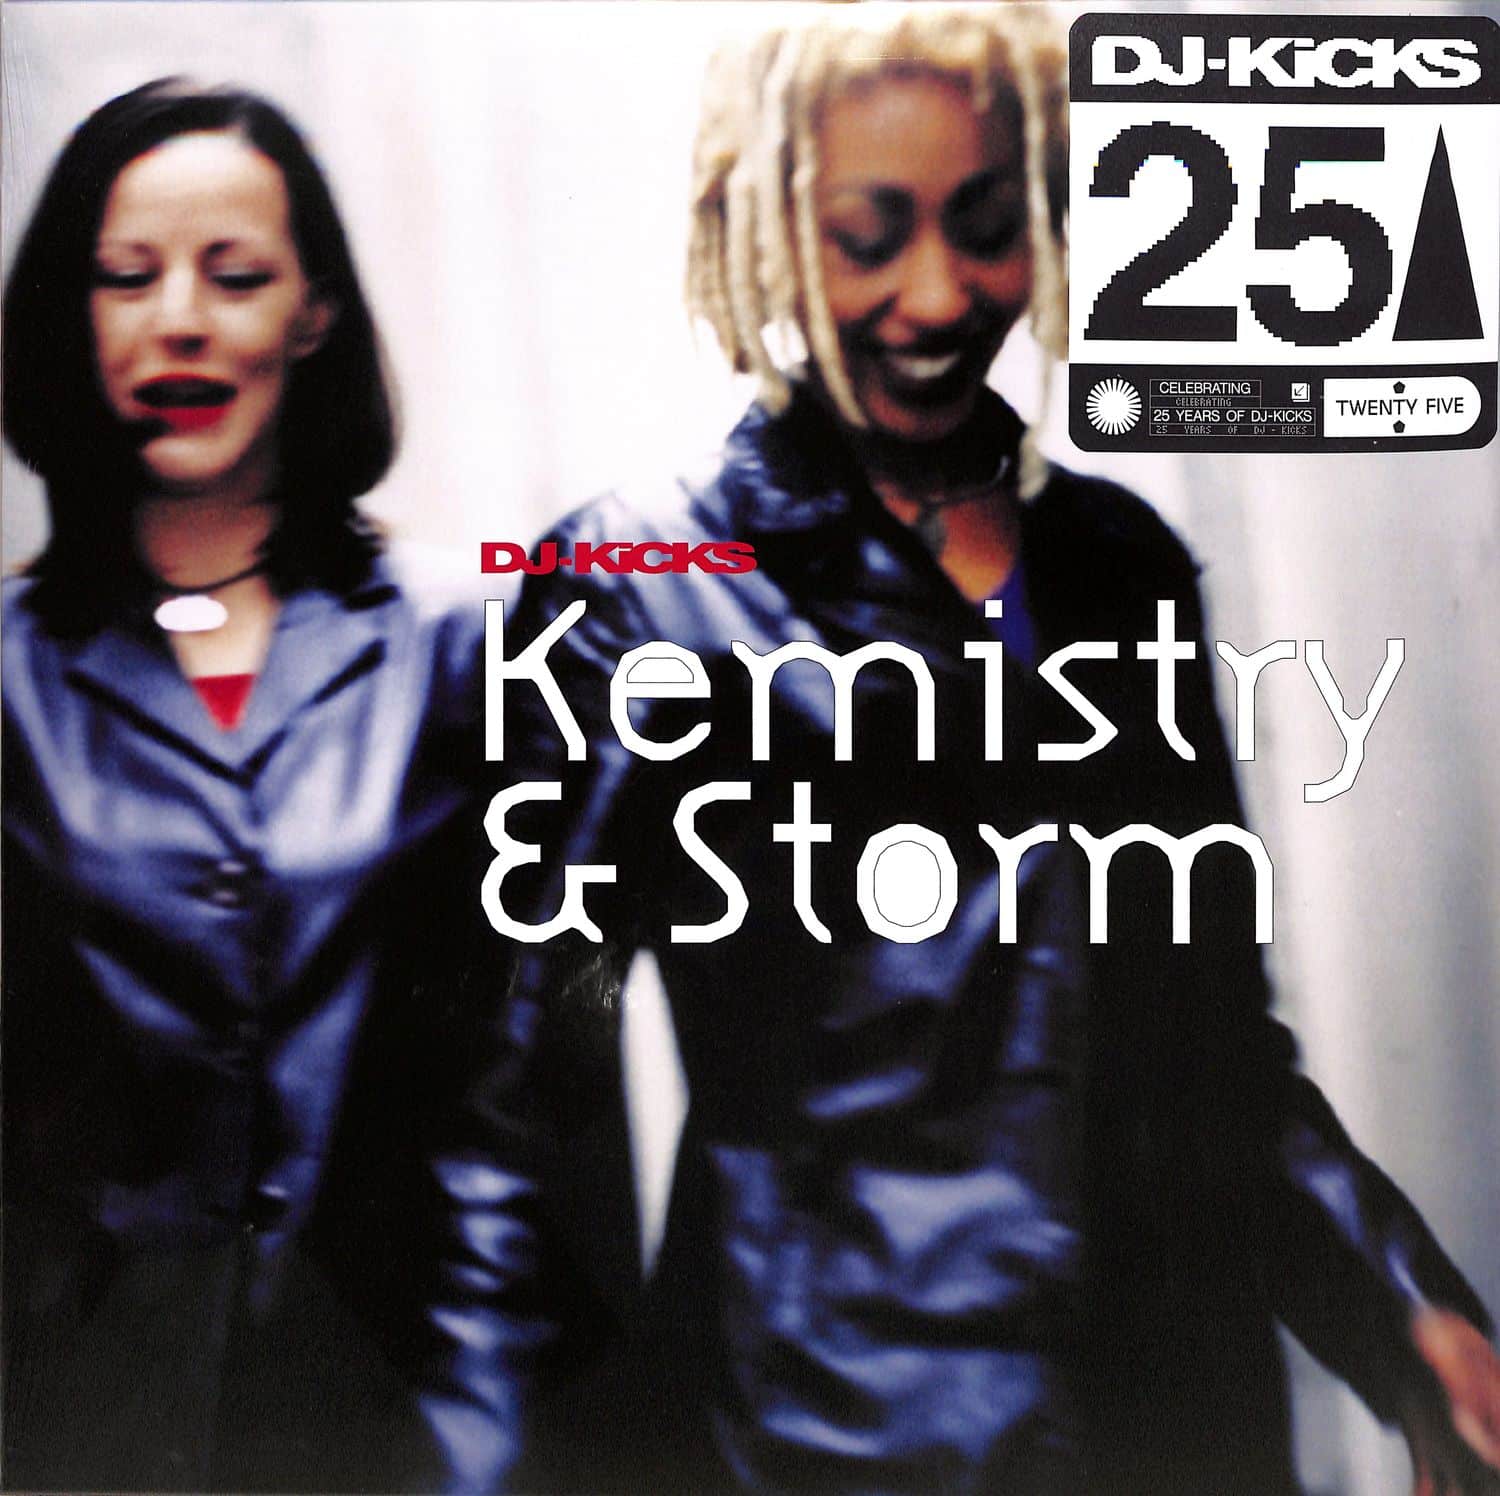 Kemistry & Storm - DJ-KICKS 